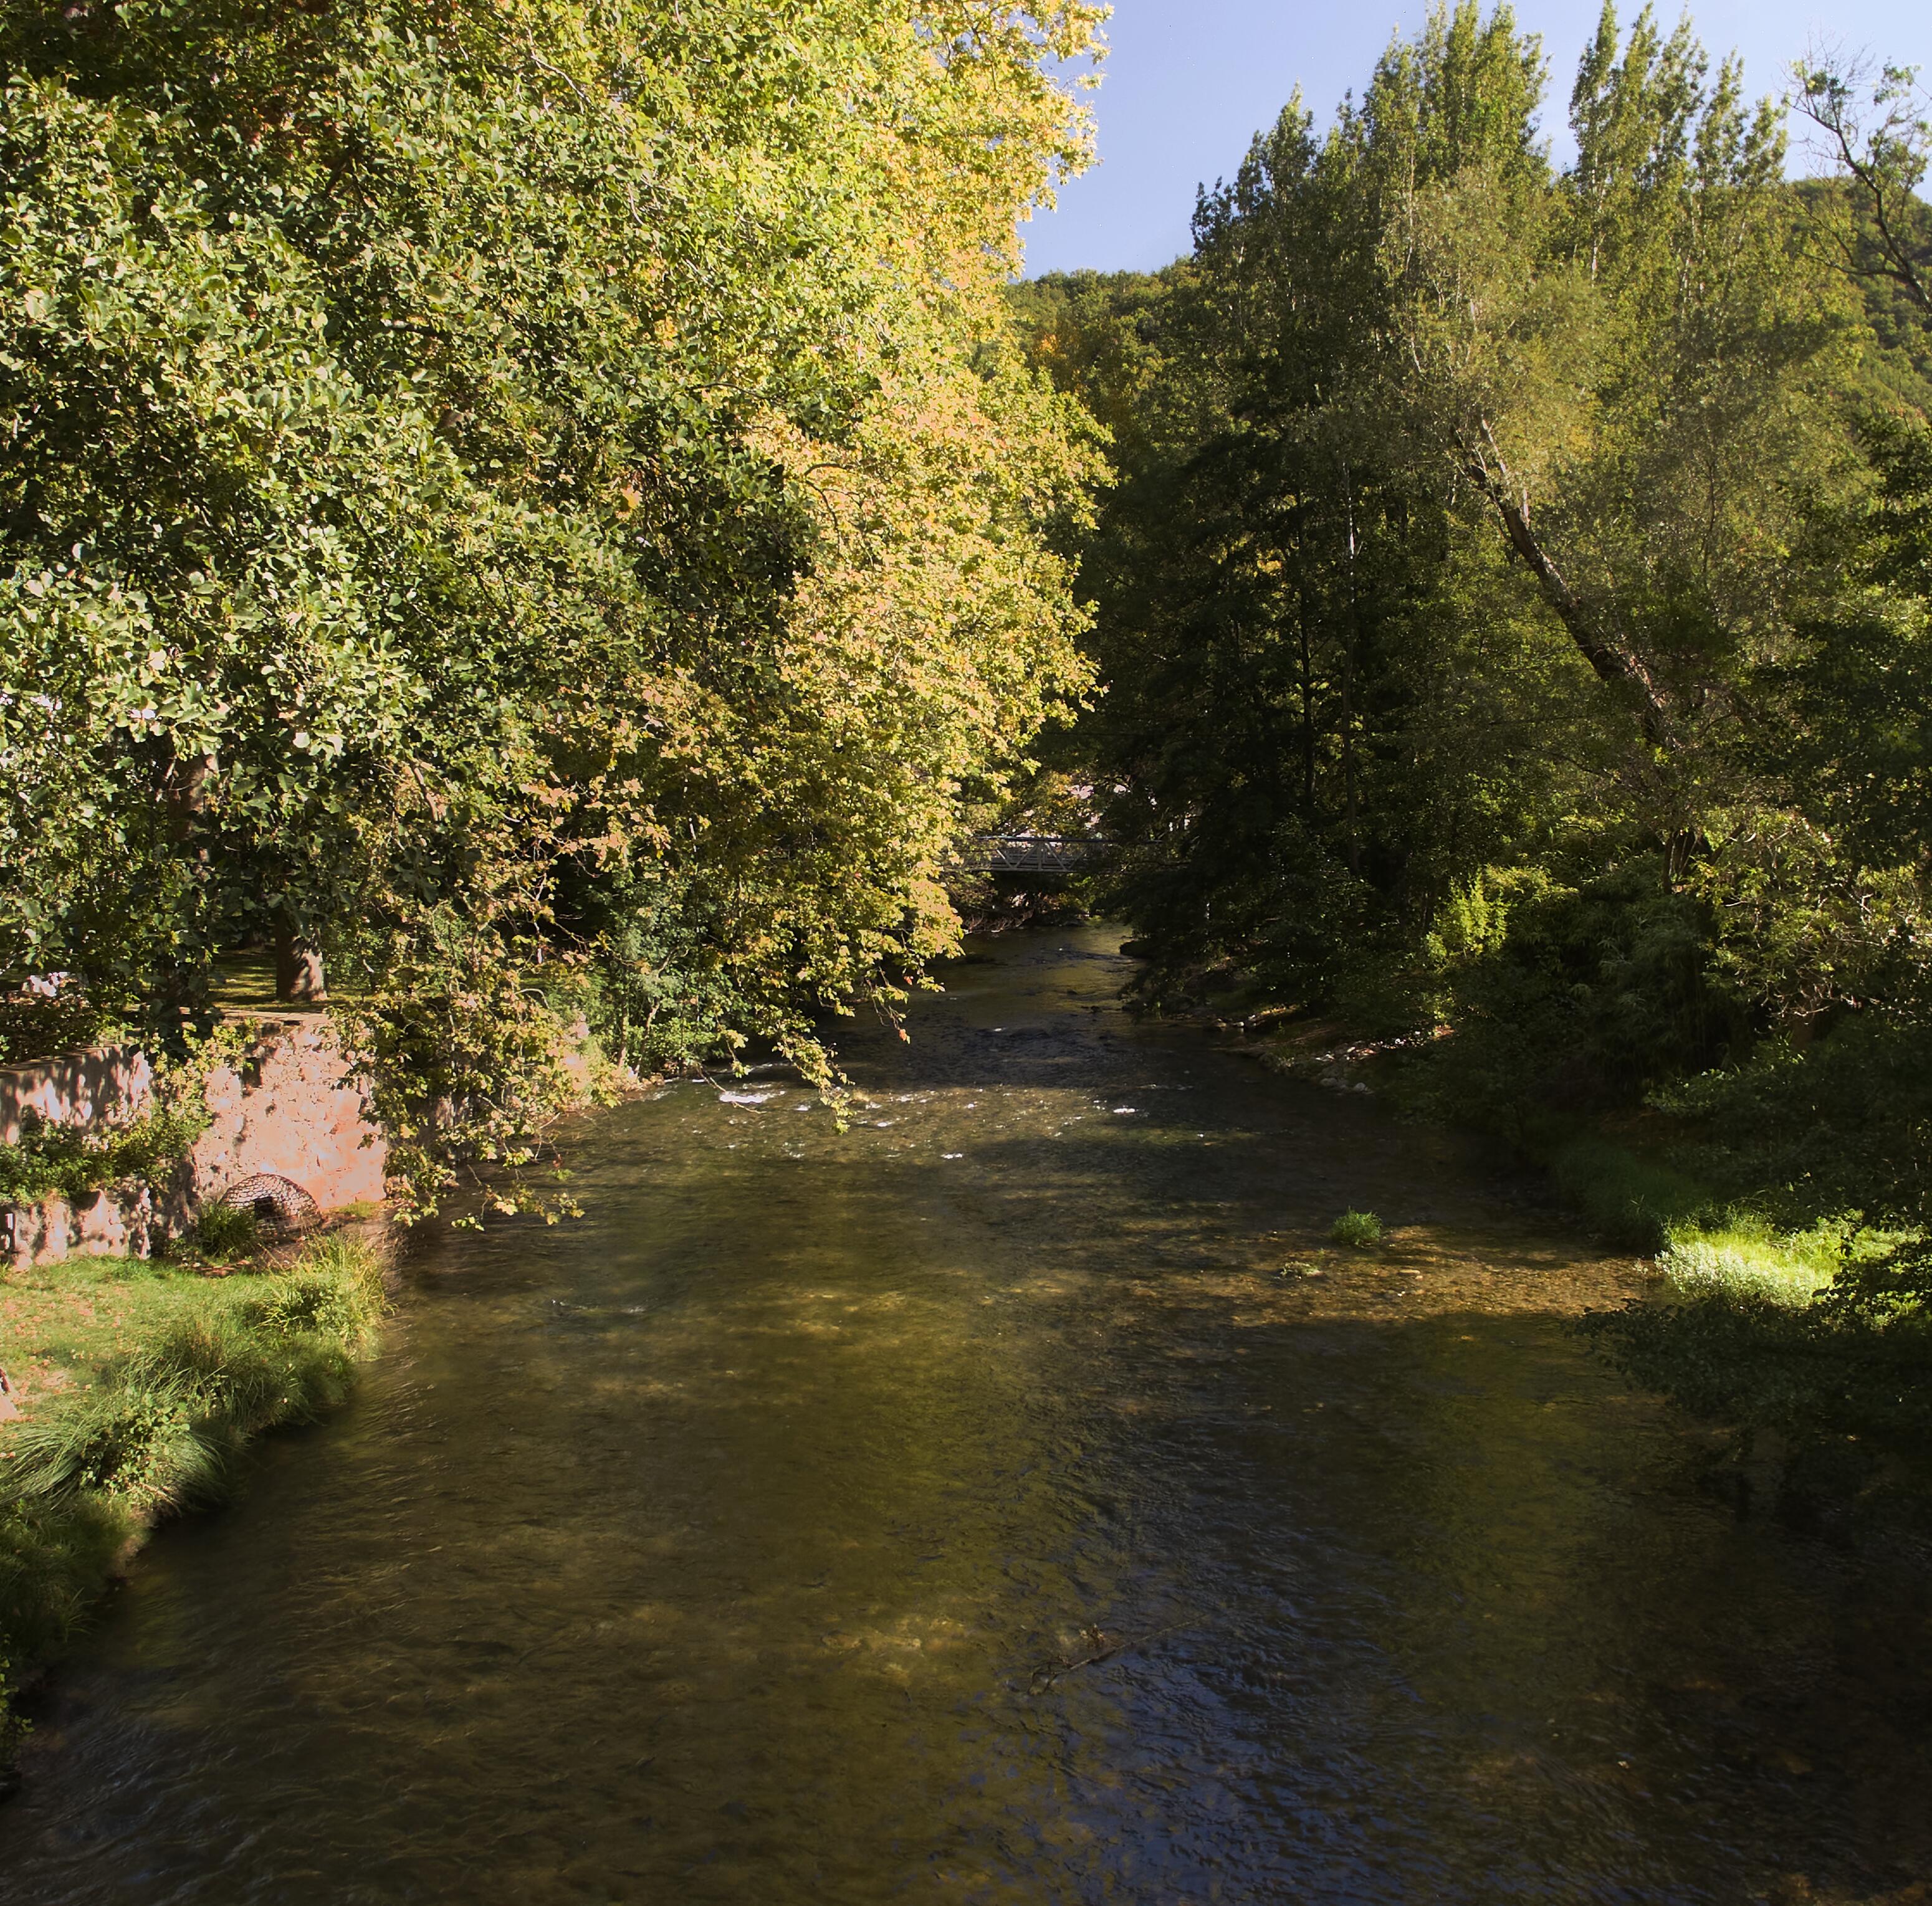 Beskyttelse af miljøet omkring Avène-les-Bains: